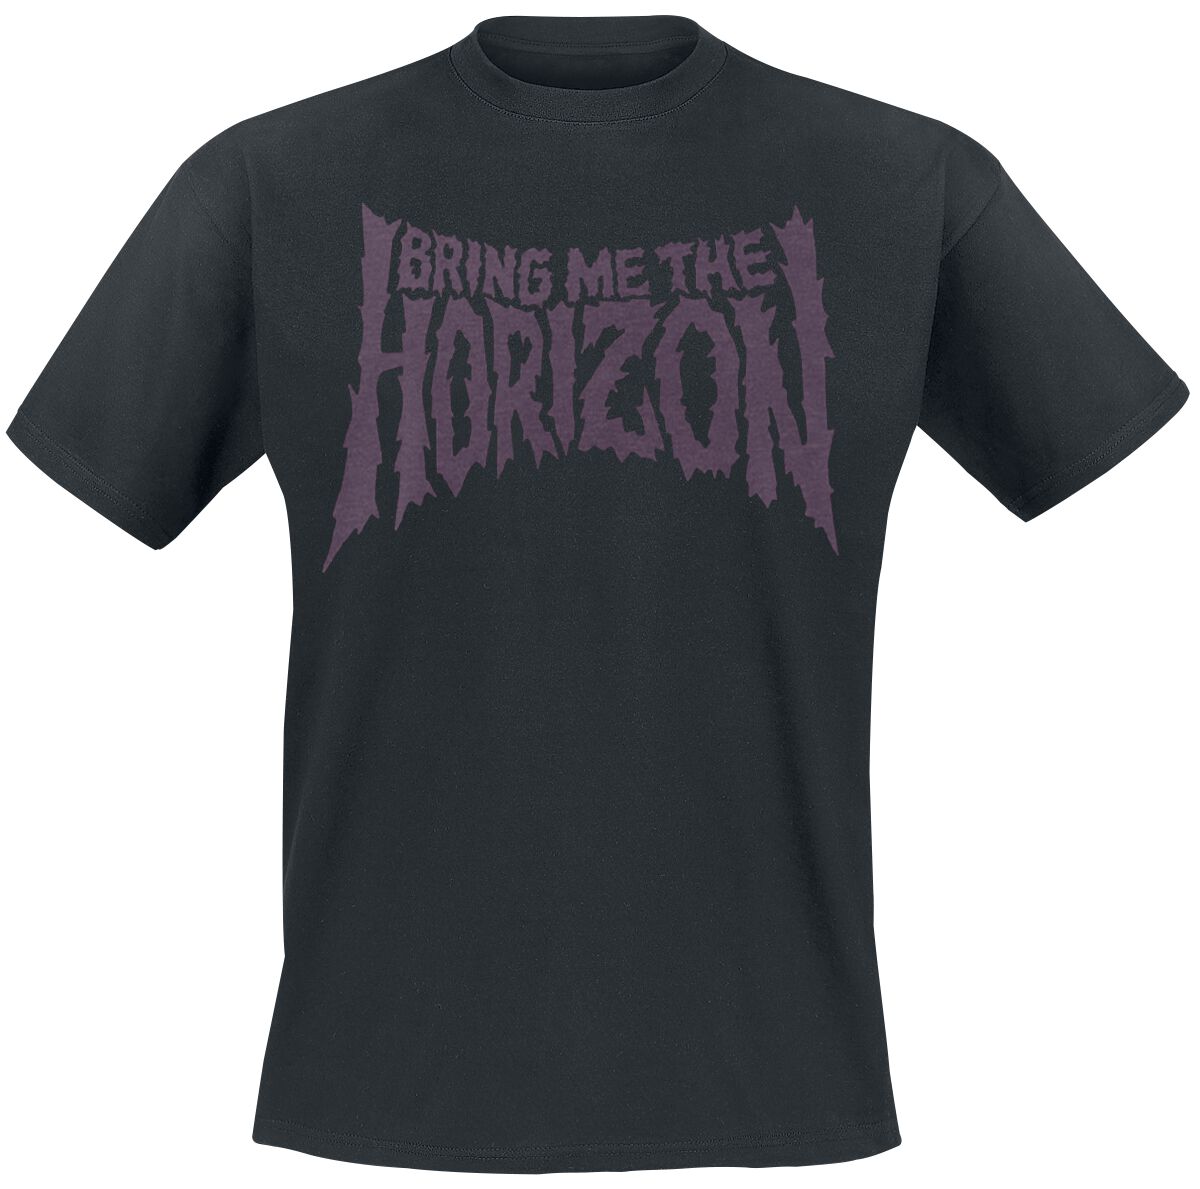 Bring Me The Horizon T-Shirt - Reaper - S bis 3XL - für Männer - Größe XL - schwarz  - Lizenziertes Merchandise!